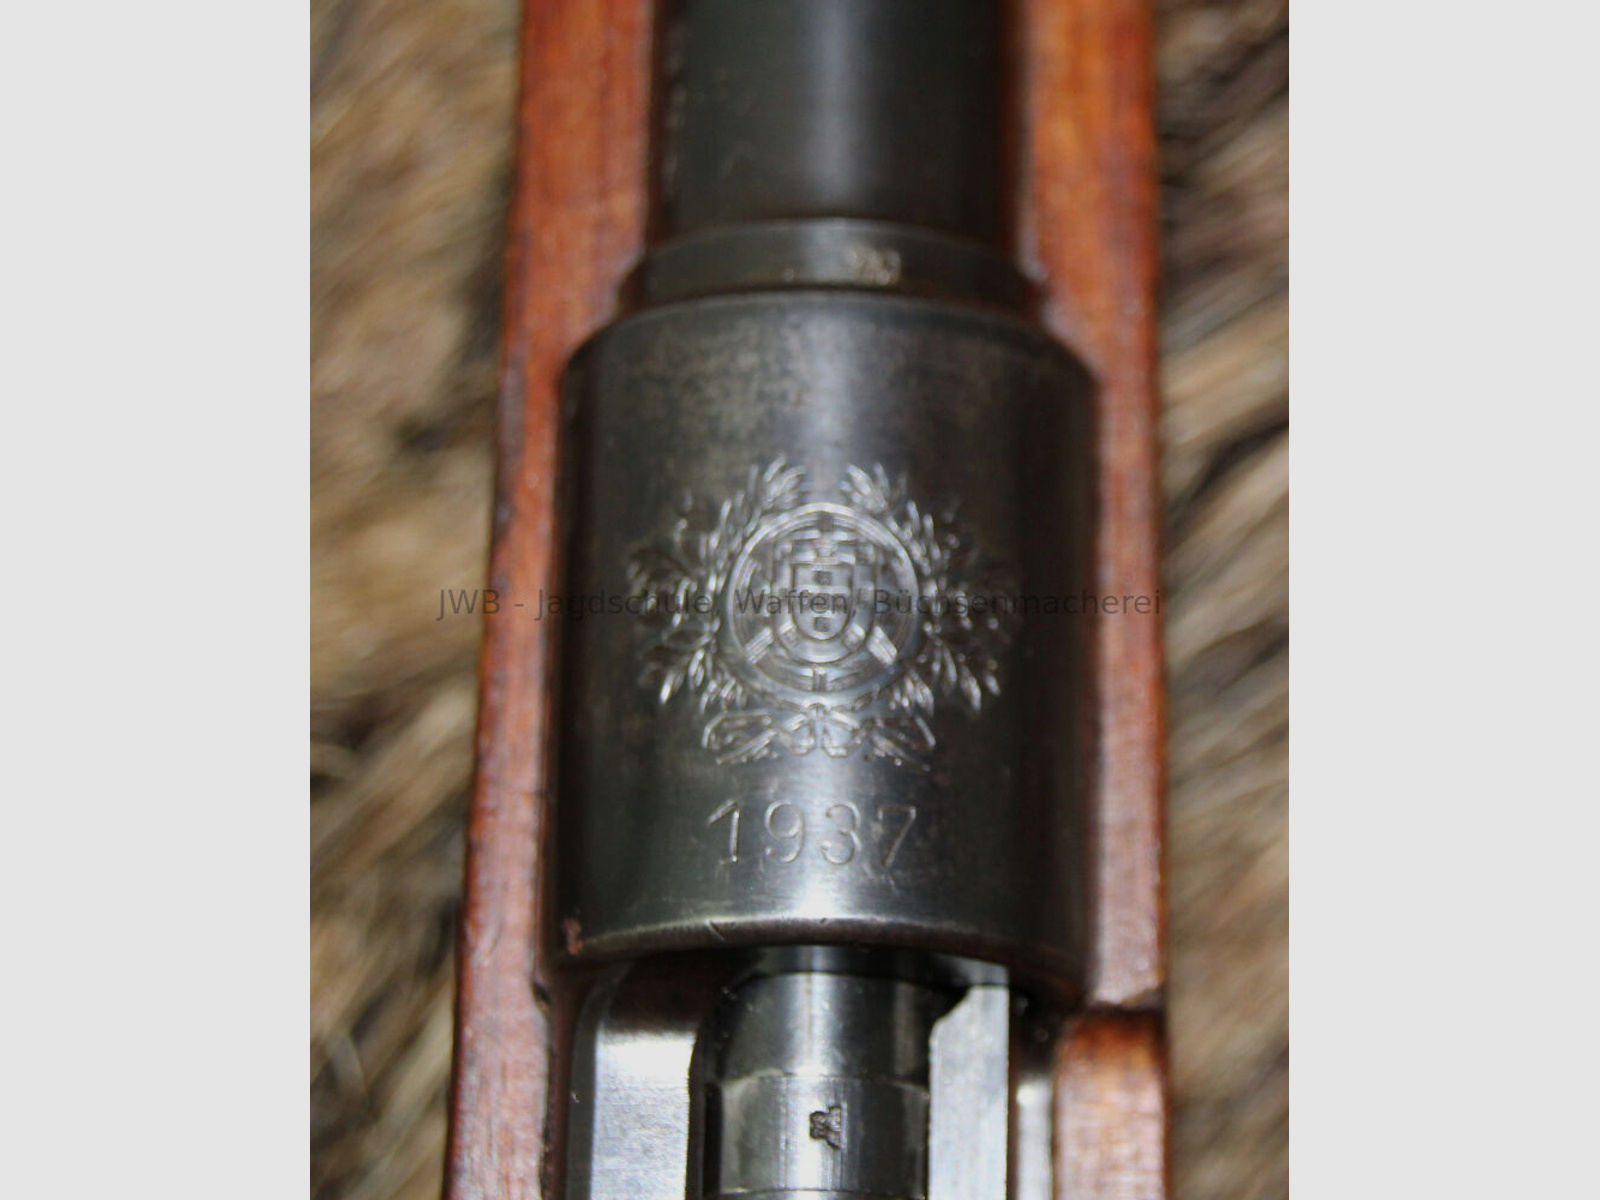 Portugal - Mauser in absolutem Sammlerzustand (nummerngleich incl. Schraube